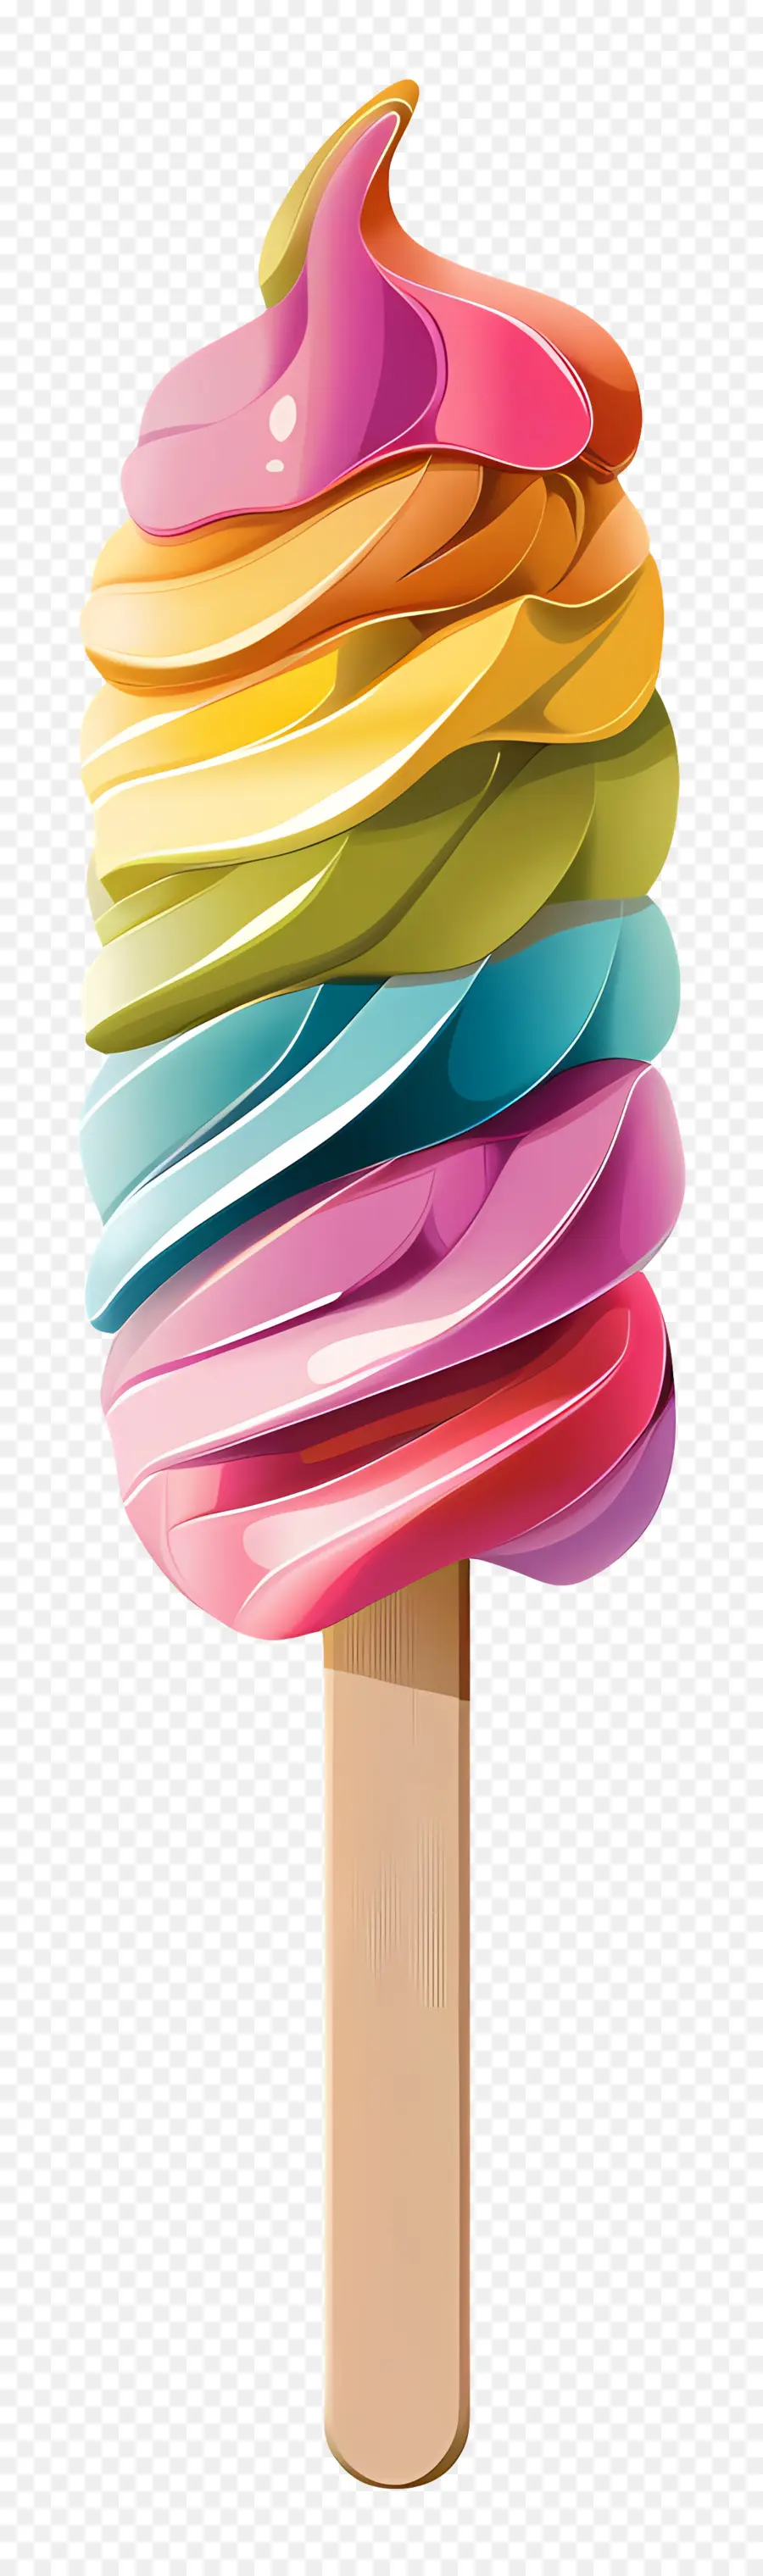 Kem Stick cầu vồng popsicle xoáy icing icing đầy màu sắc kem - Cầu vồng popsicle với màu đóng băng xoáy